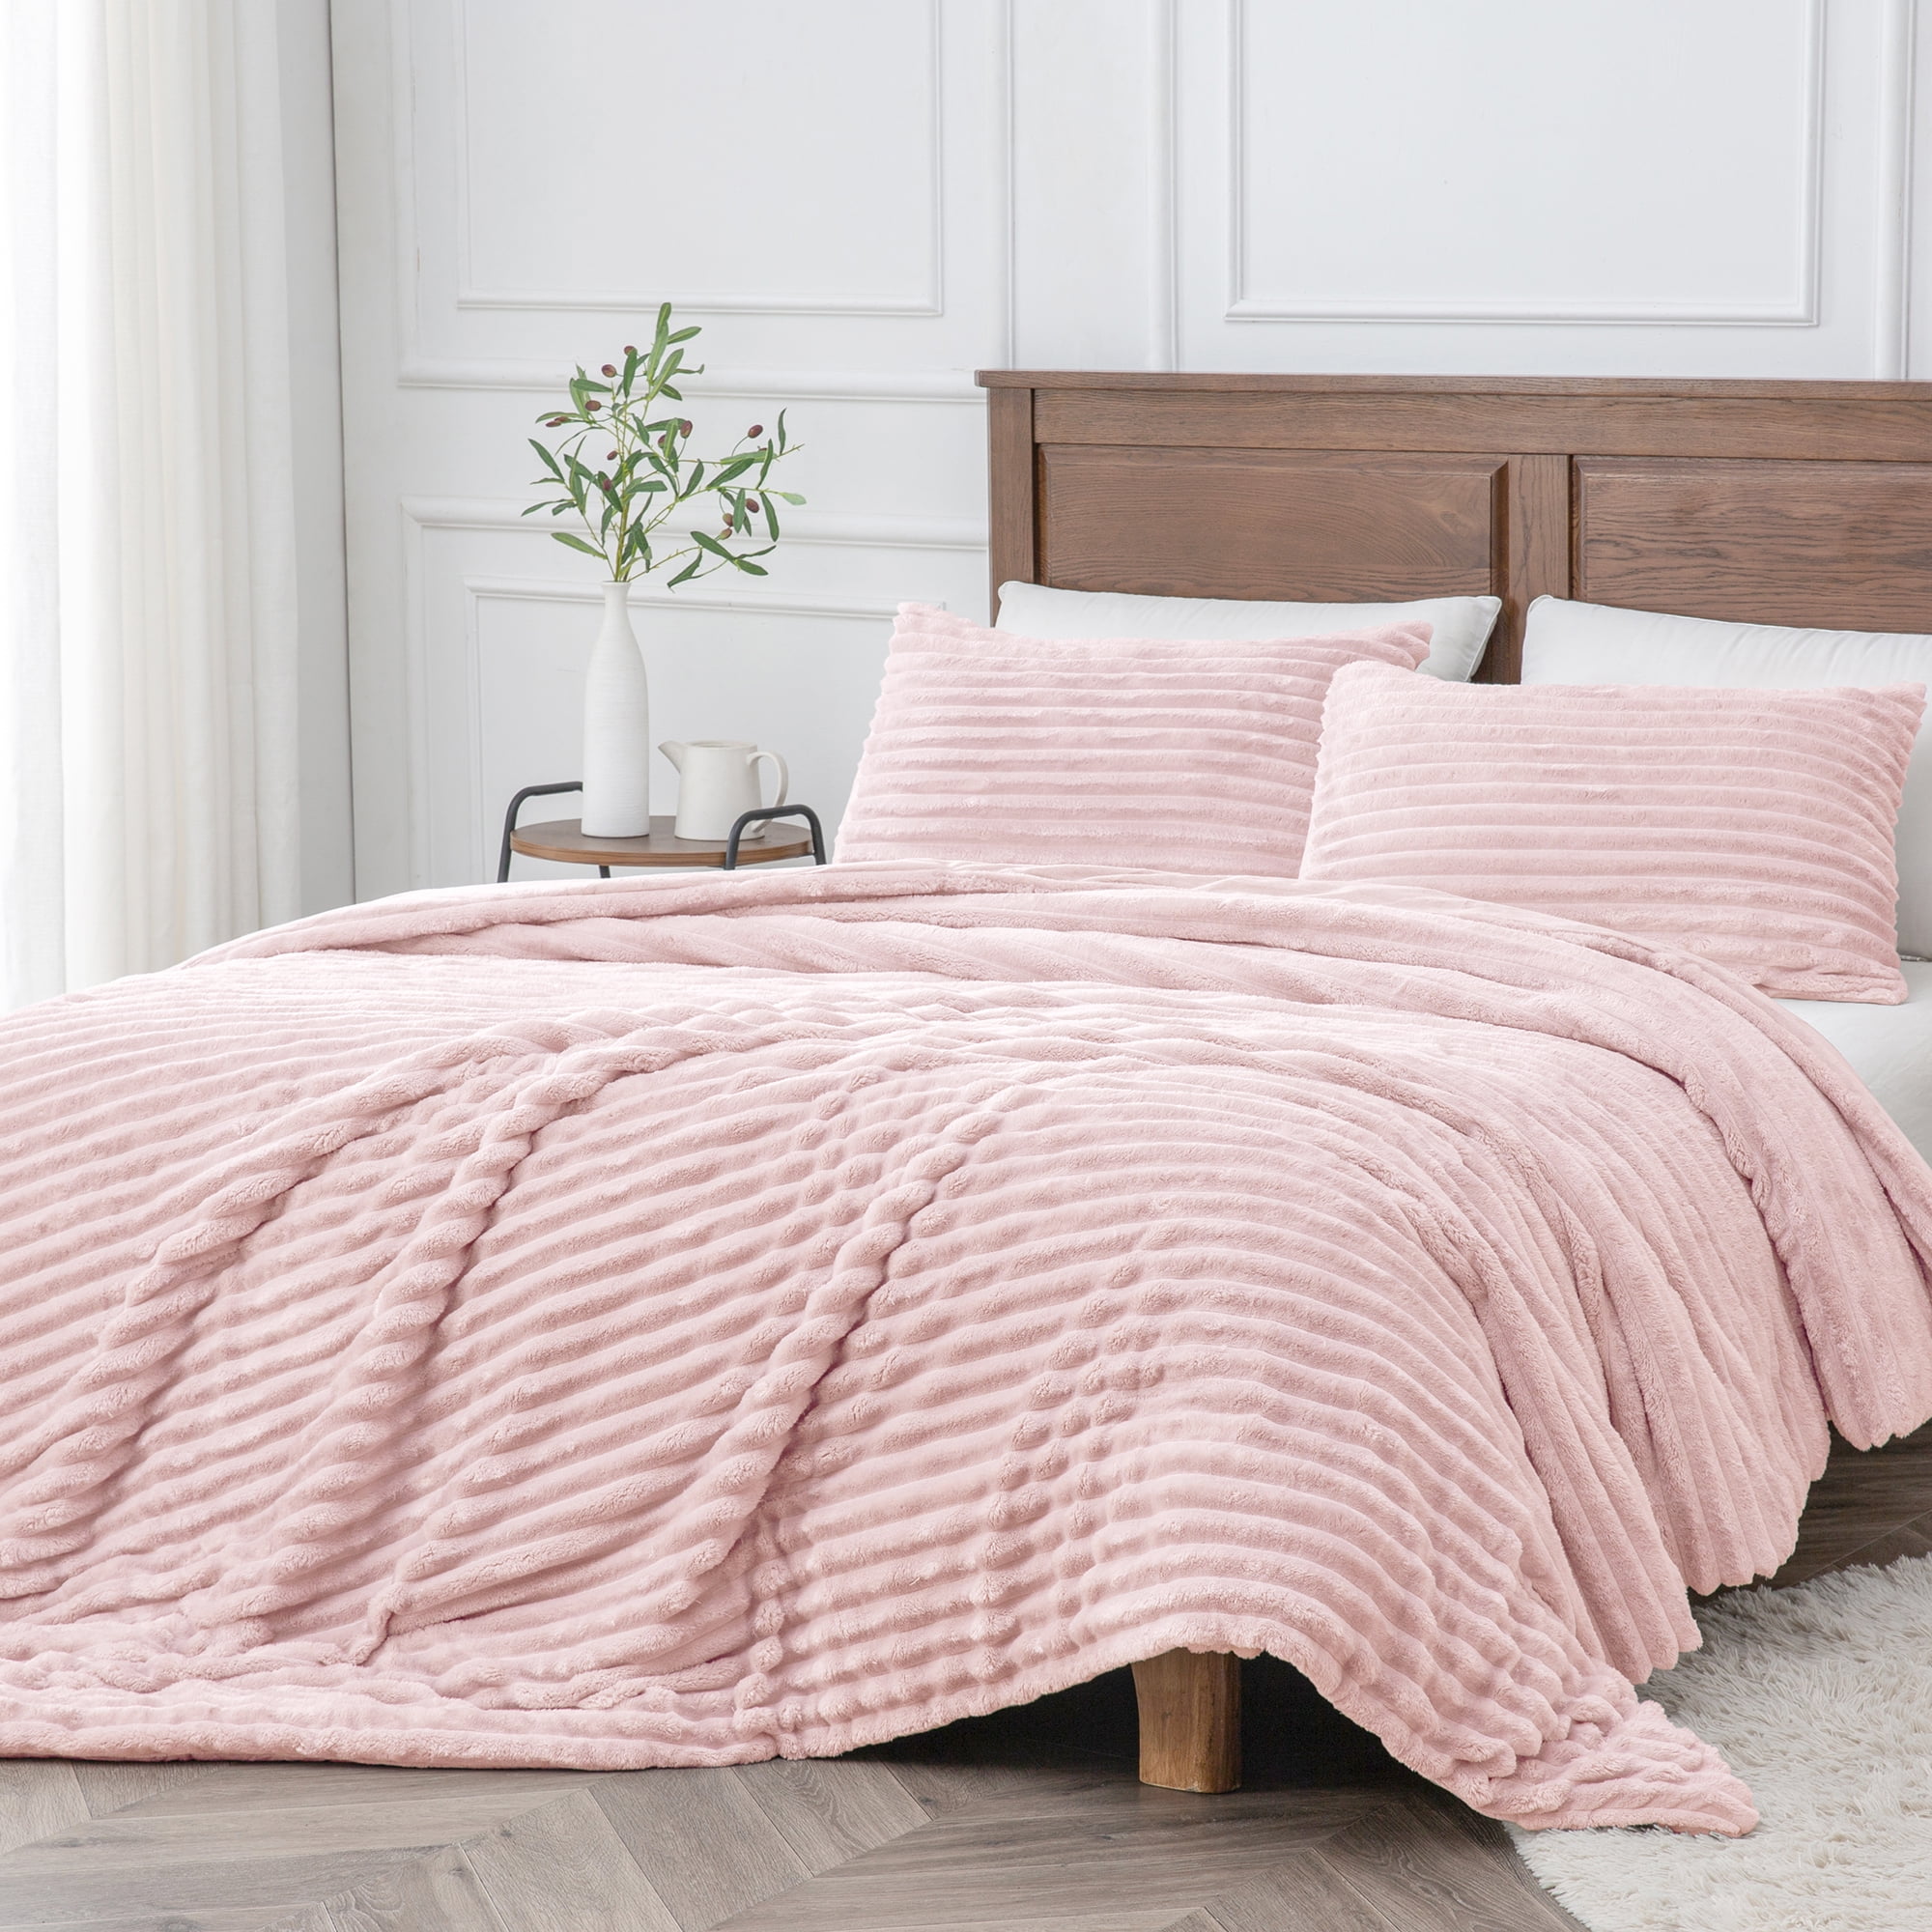 BEDELITE Fleece Queen Comforter Set -Super Soft & Warm Fluffy Pink ...